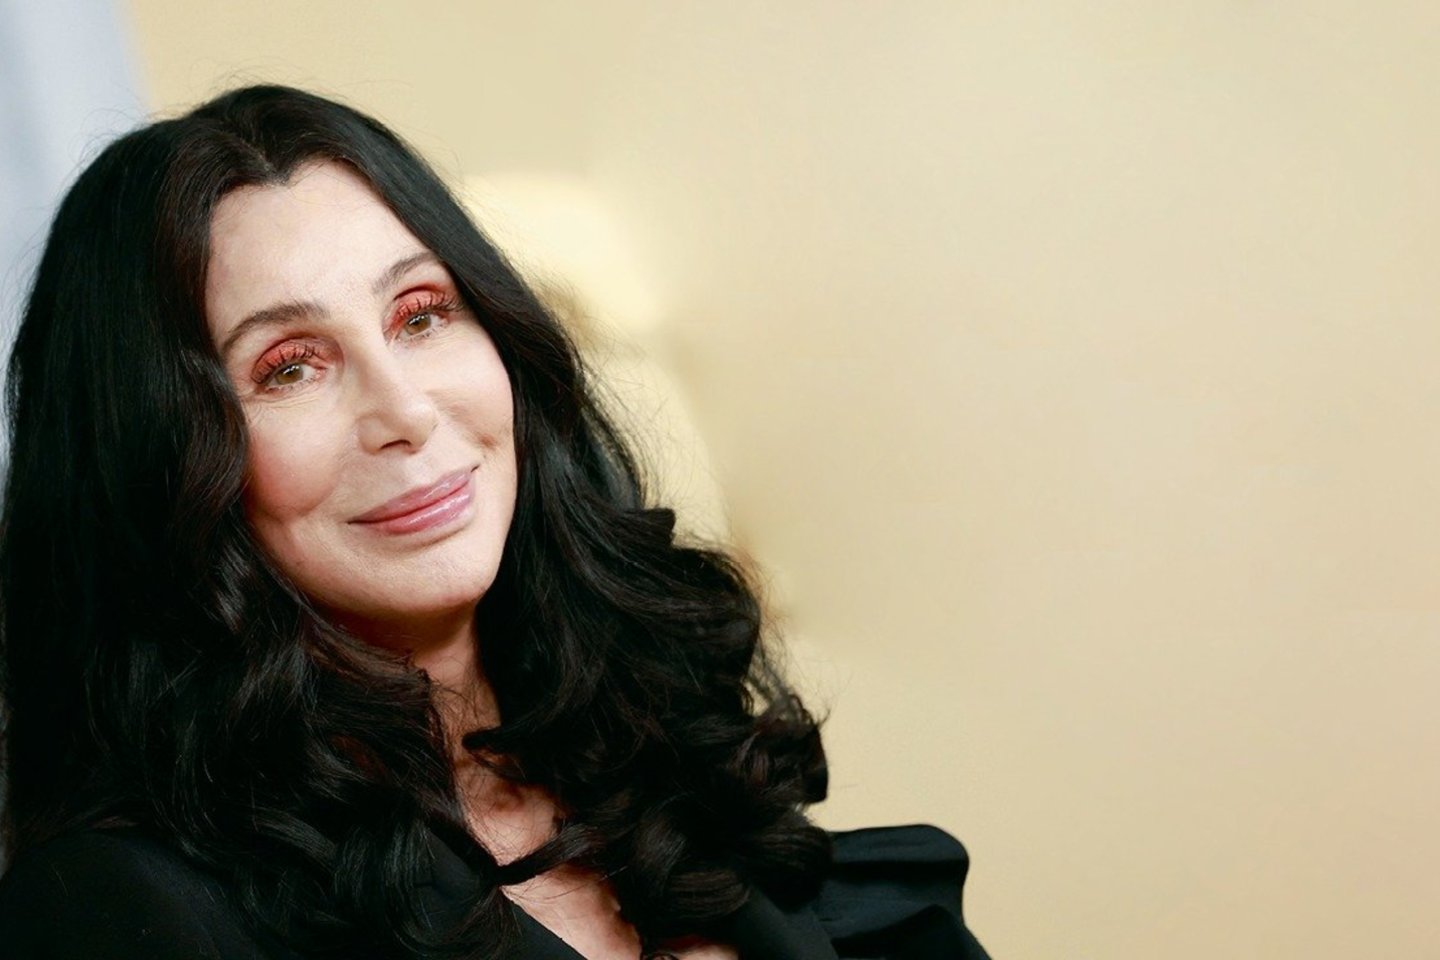 Dainininkė Cher (76 m.) pakurstė kalbas apie sužadėtuves su buvusiu Amber Rose (39 m.) vaikinu 36 metų įrašų prodiuseriu ir reperiu Alexanderiu Edwardsu.<br>Scanpix ir instagramo nuotr.